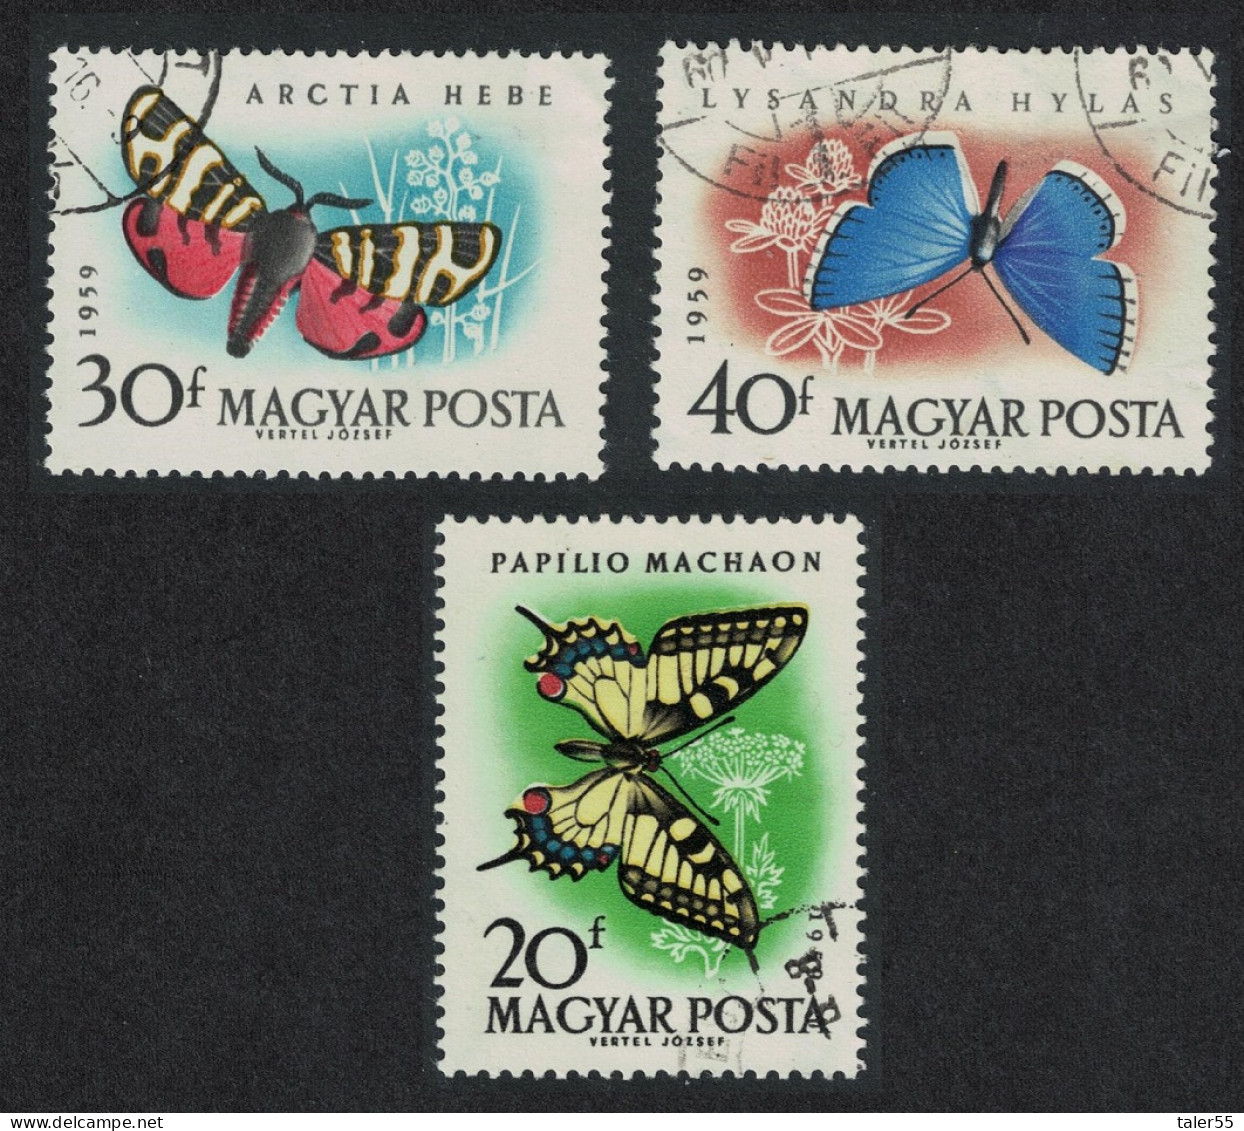 Hungary Butterflies And Moths 3v 1959 Canc SG#1612-1614 MI#1633-1635A - Gebruikt